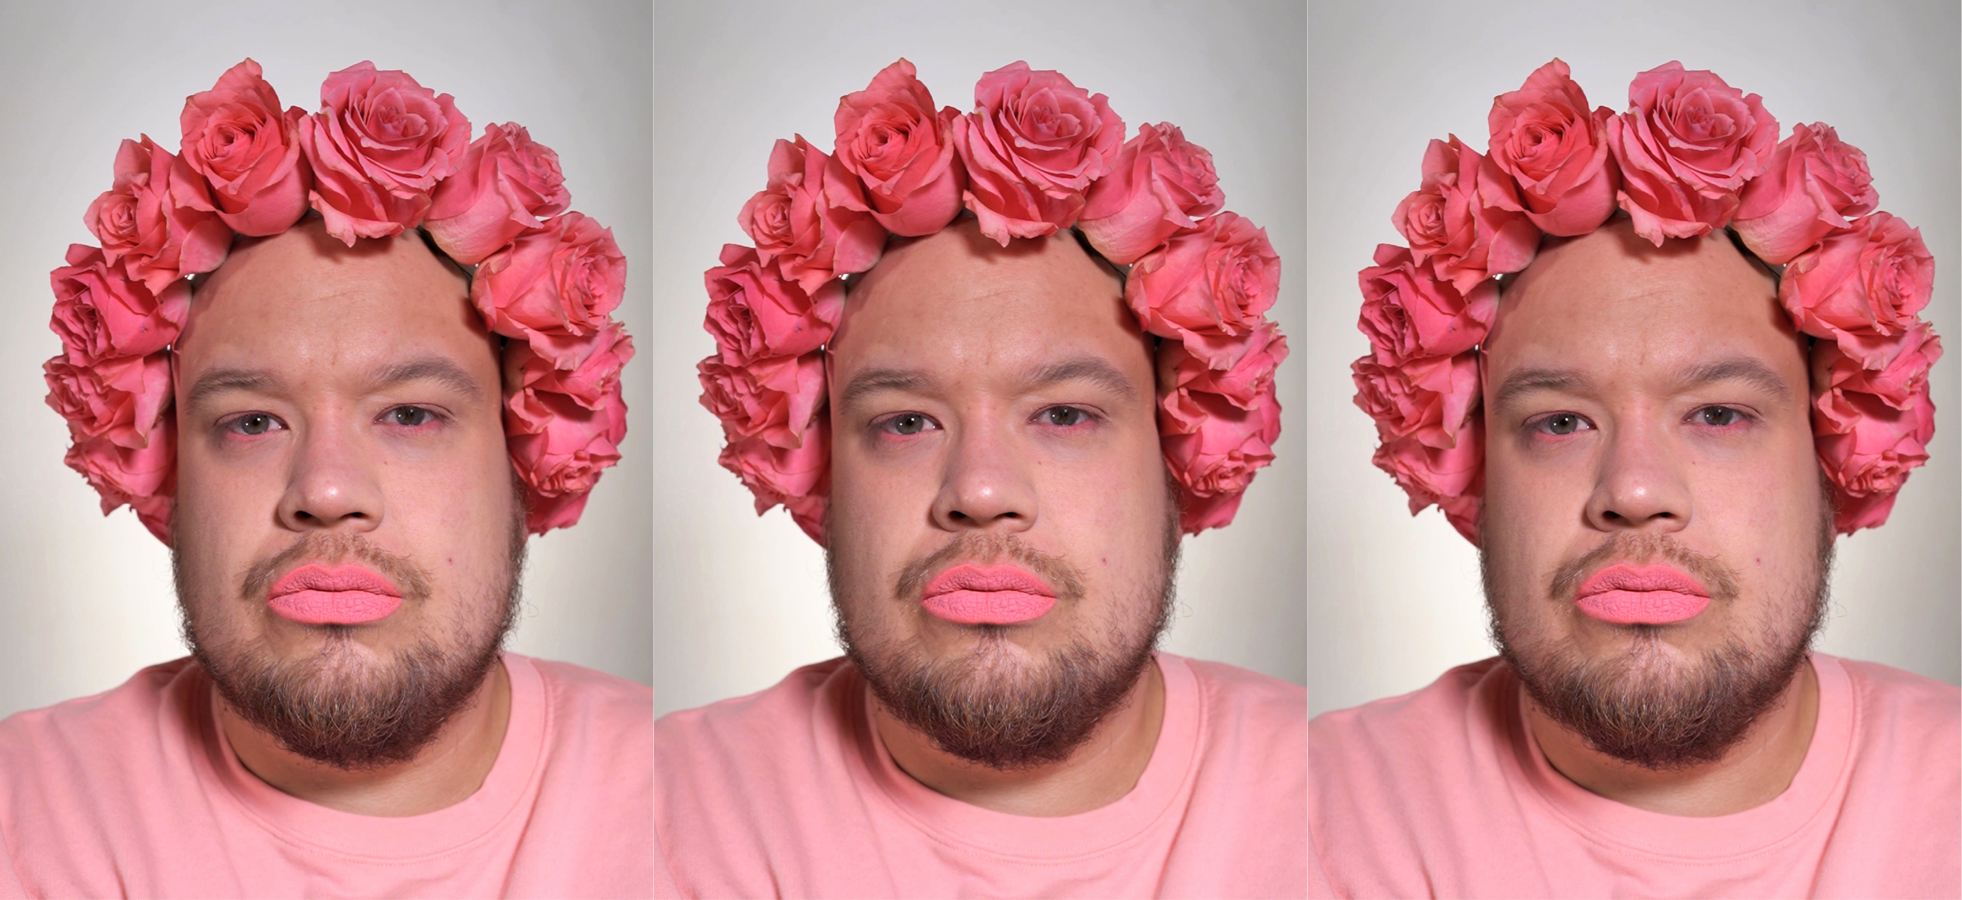 Valkoihoinen henkilö, jolla on vaaleanpunaisista ruusuista koostuva seppele, vaaleanpunaista huulipunaa, parta, sekä vaaleanpunainen paita.